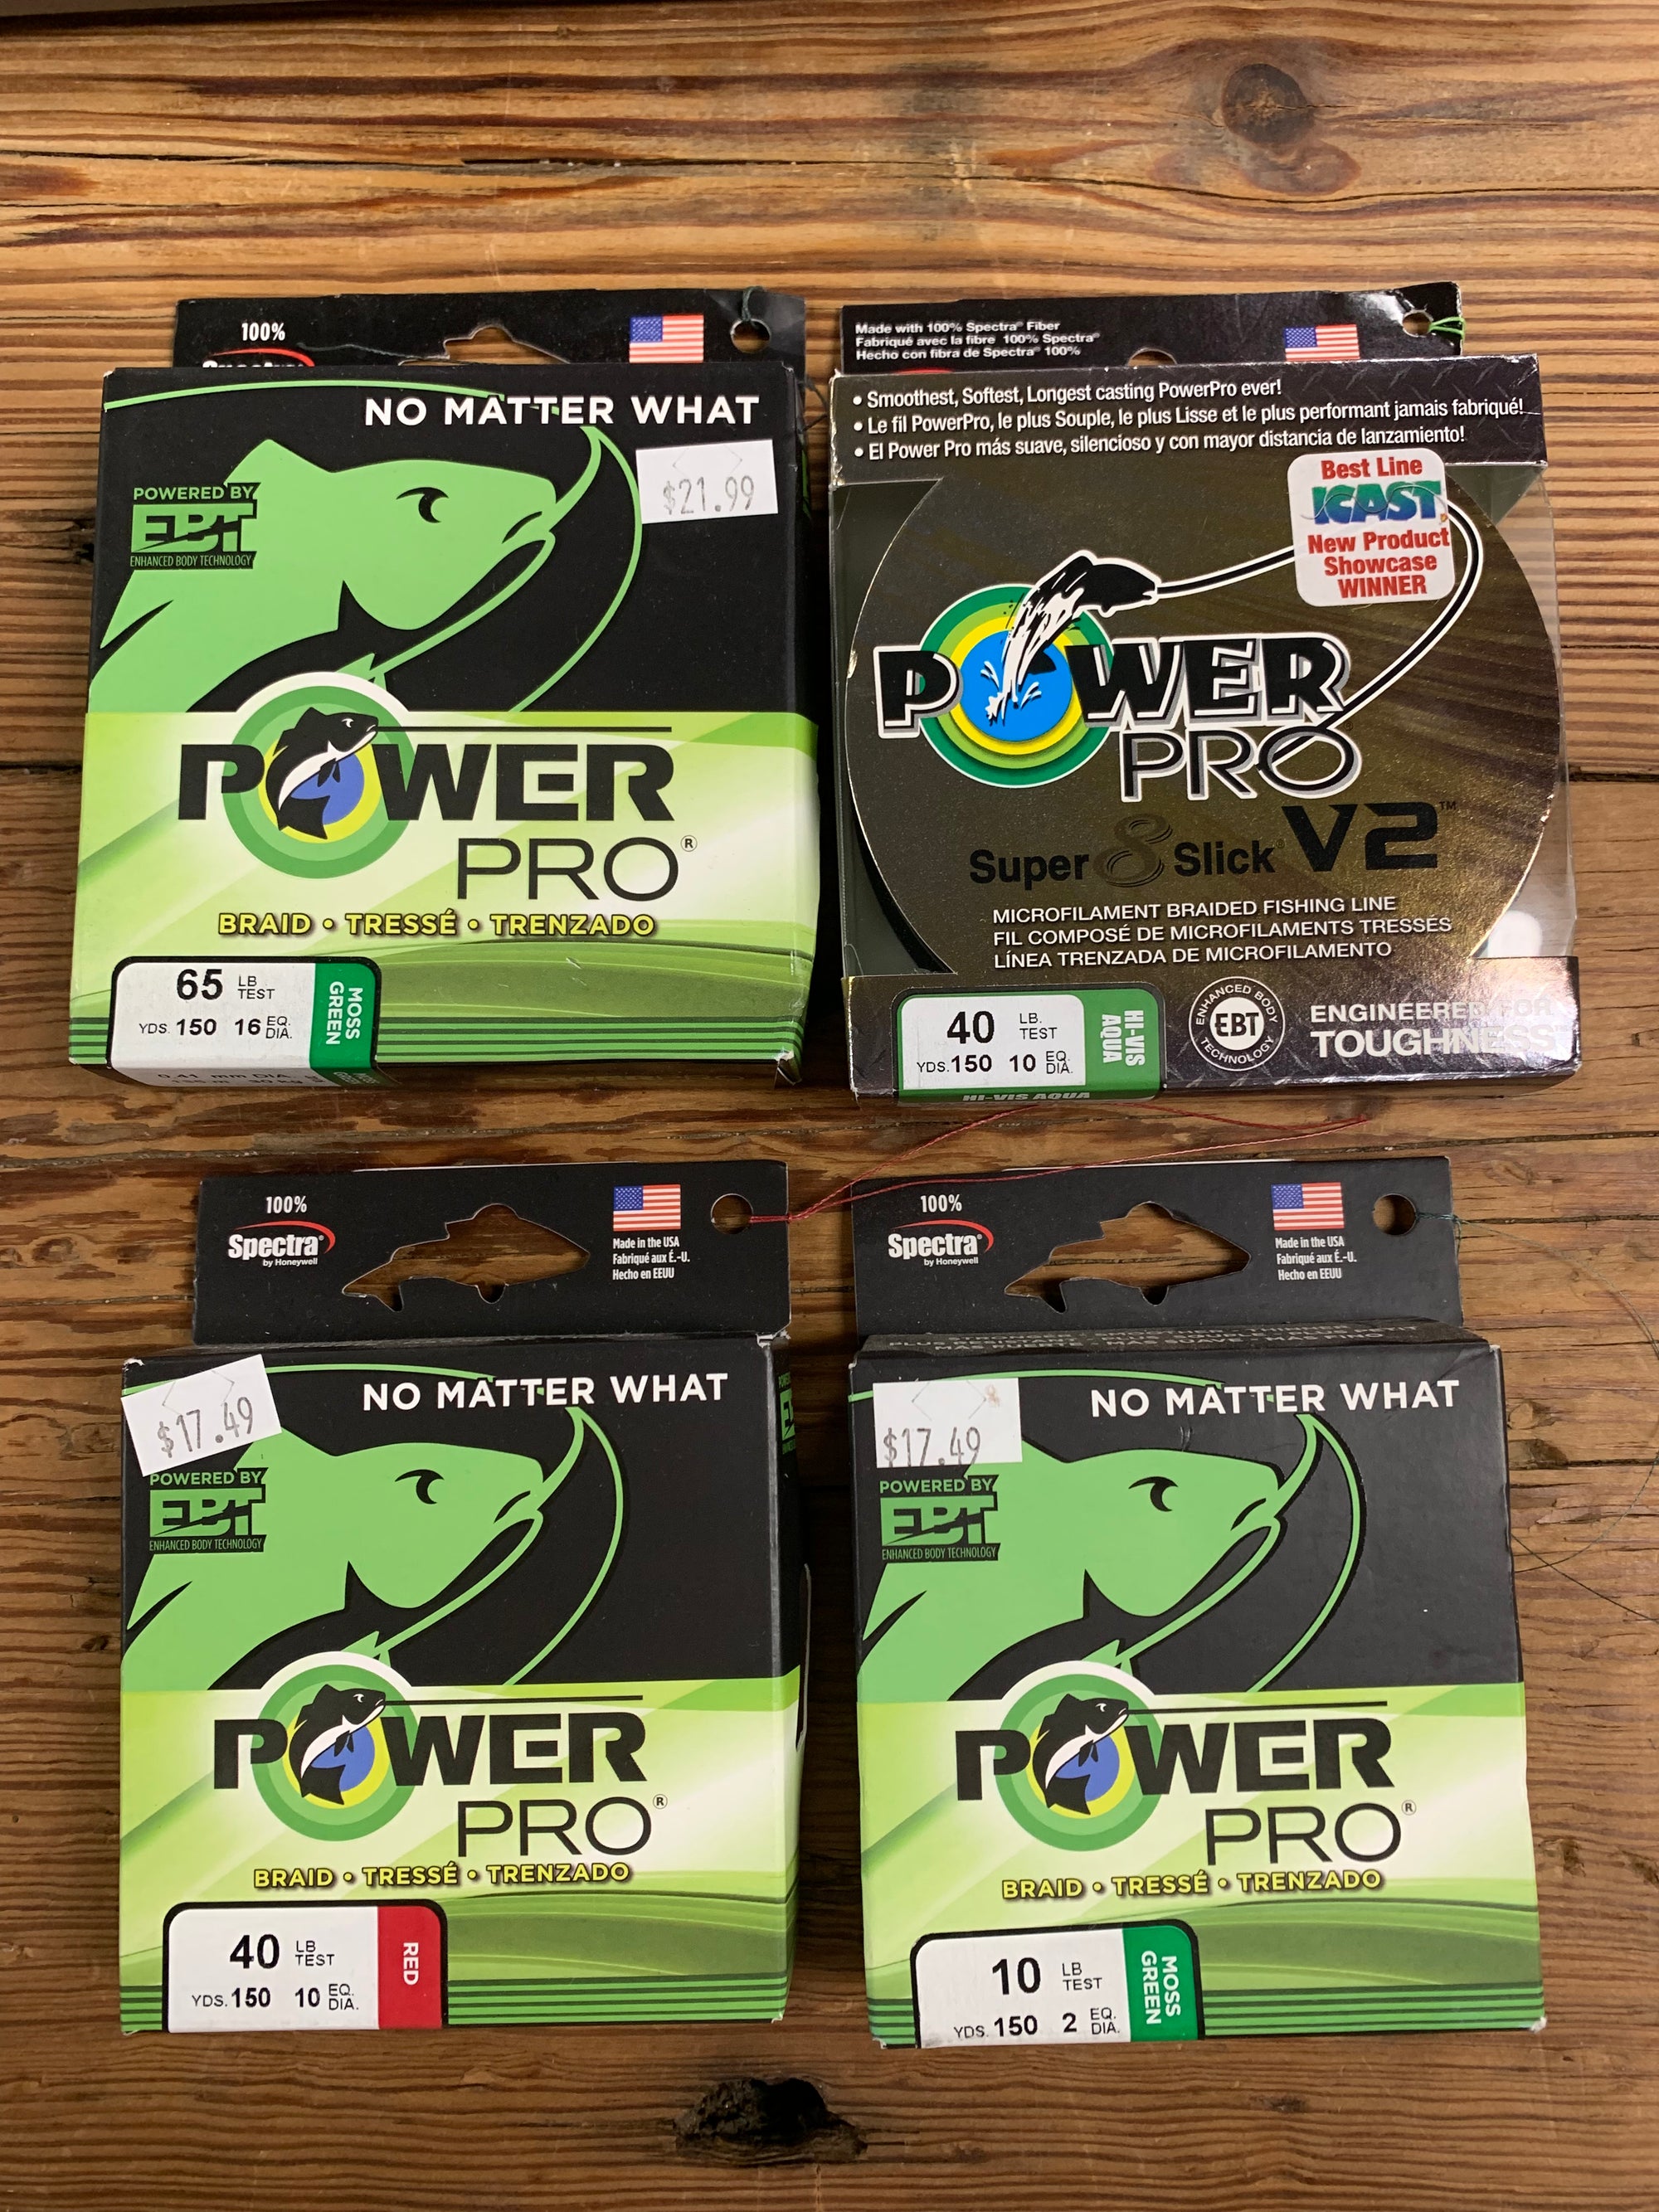 Power Pro Super Slick V2 Moss Green / 65lb